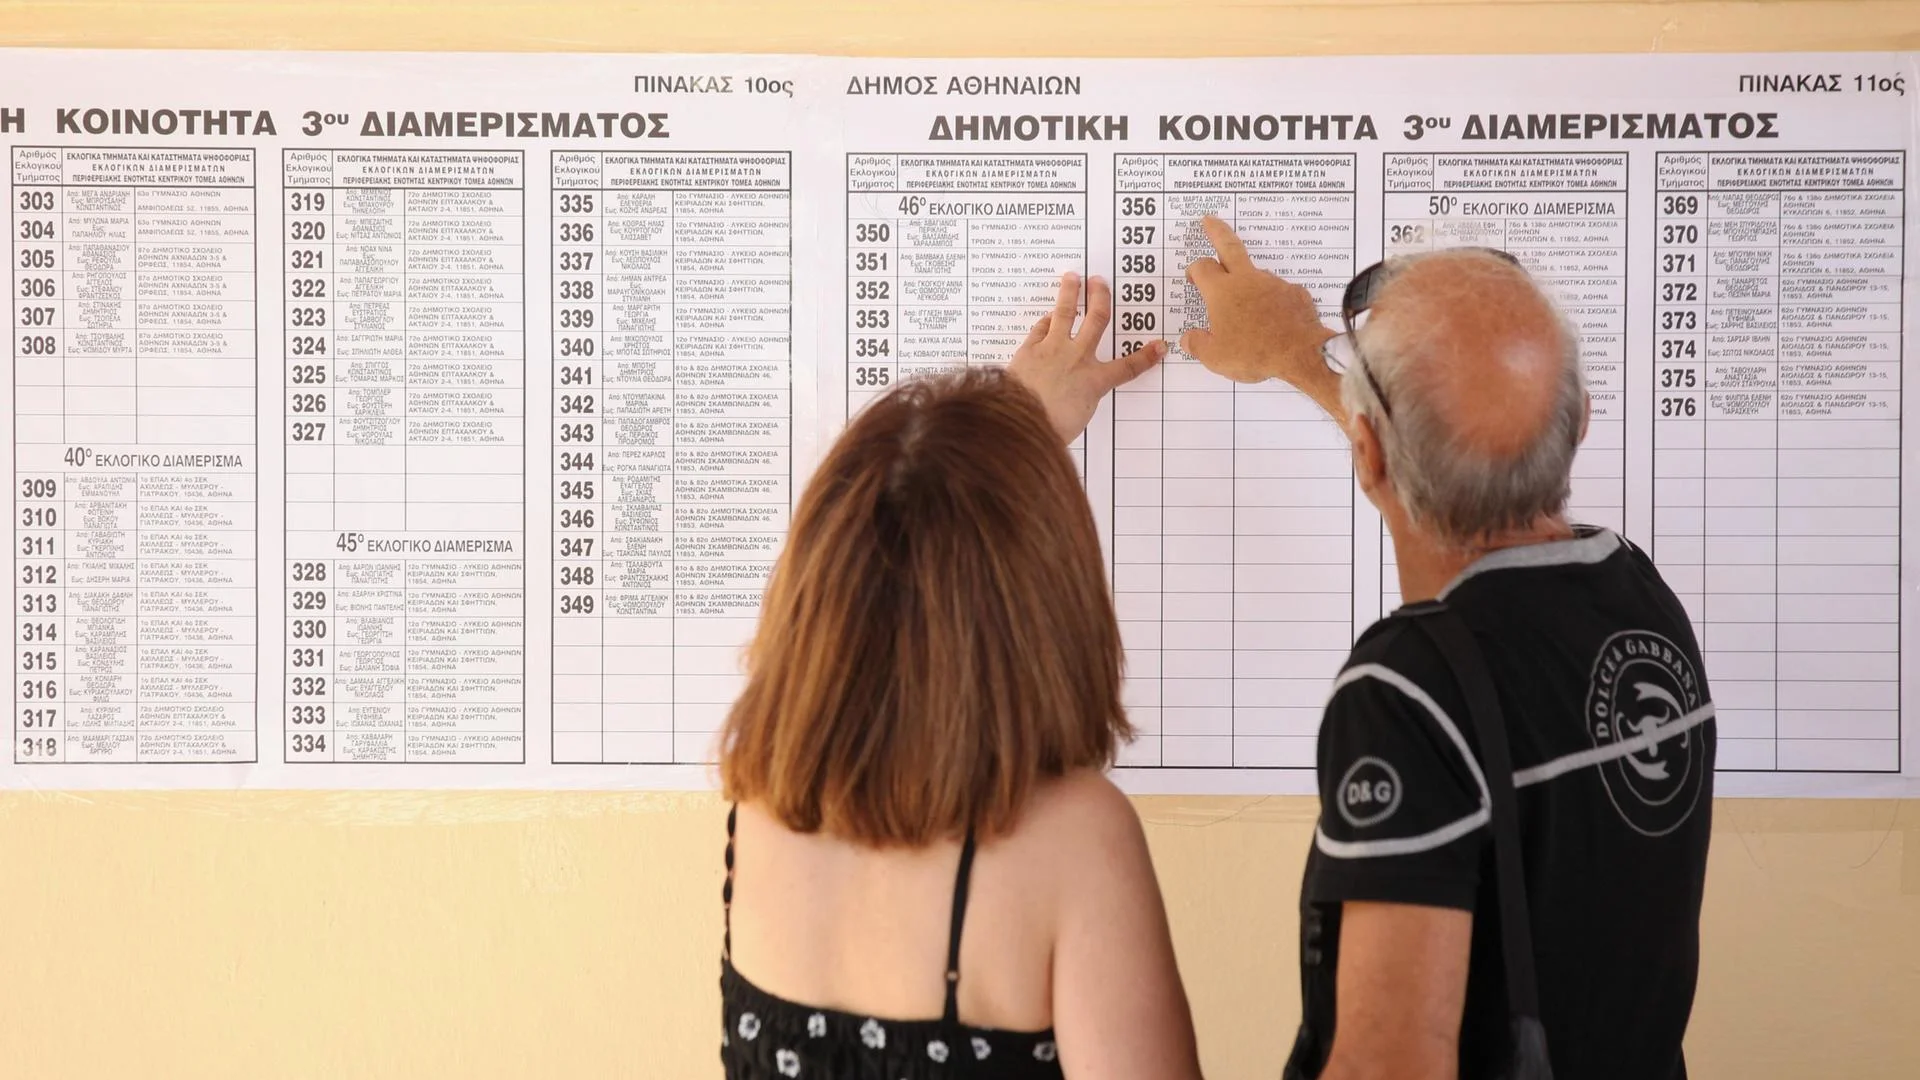 Гърция разреши гласуване по пощата само на някои избори